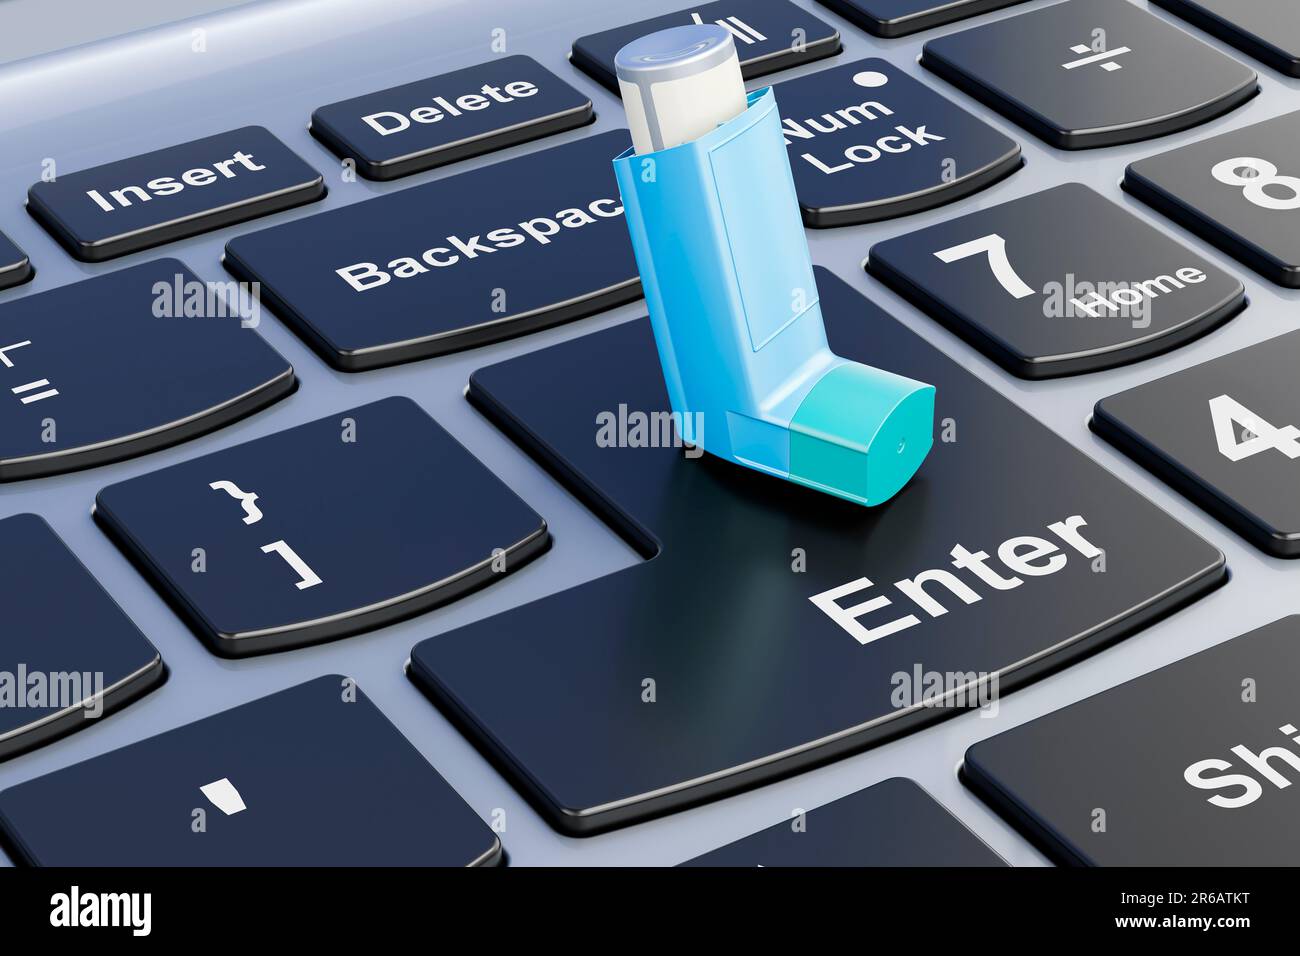 Metered-dose inhaler, MDI on laptop keyboard. 3D rendering Stock Photo